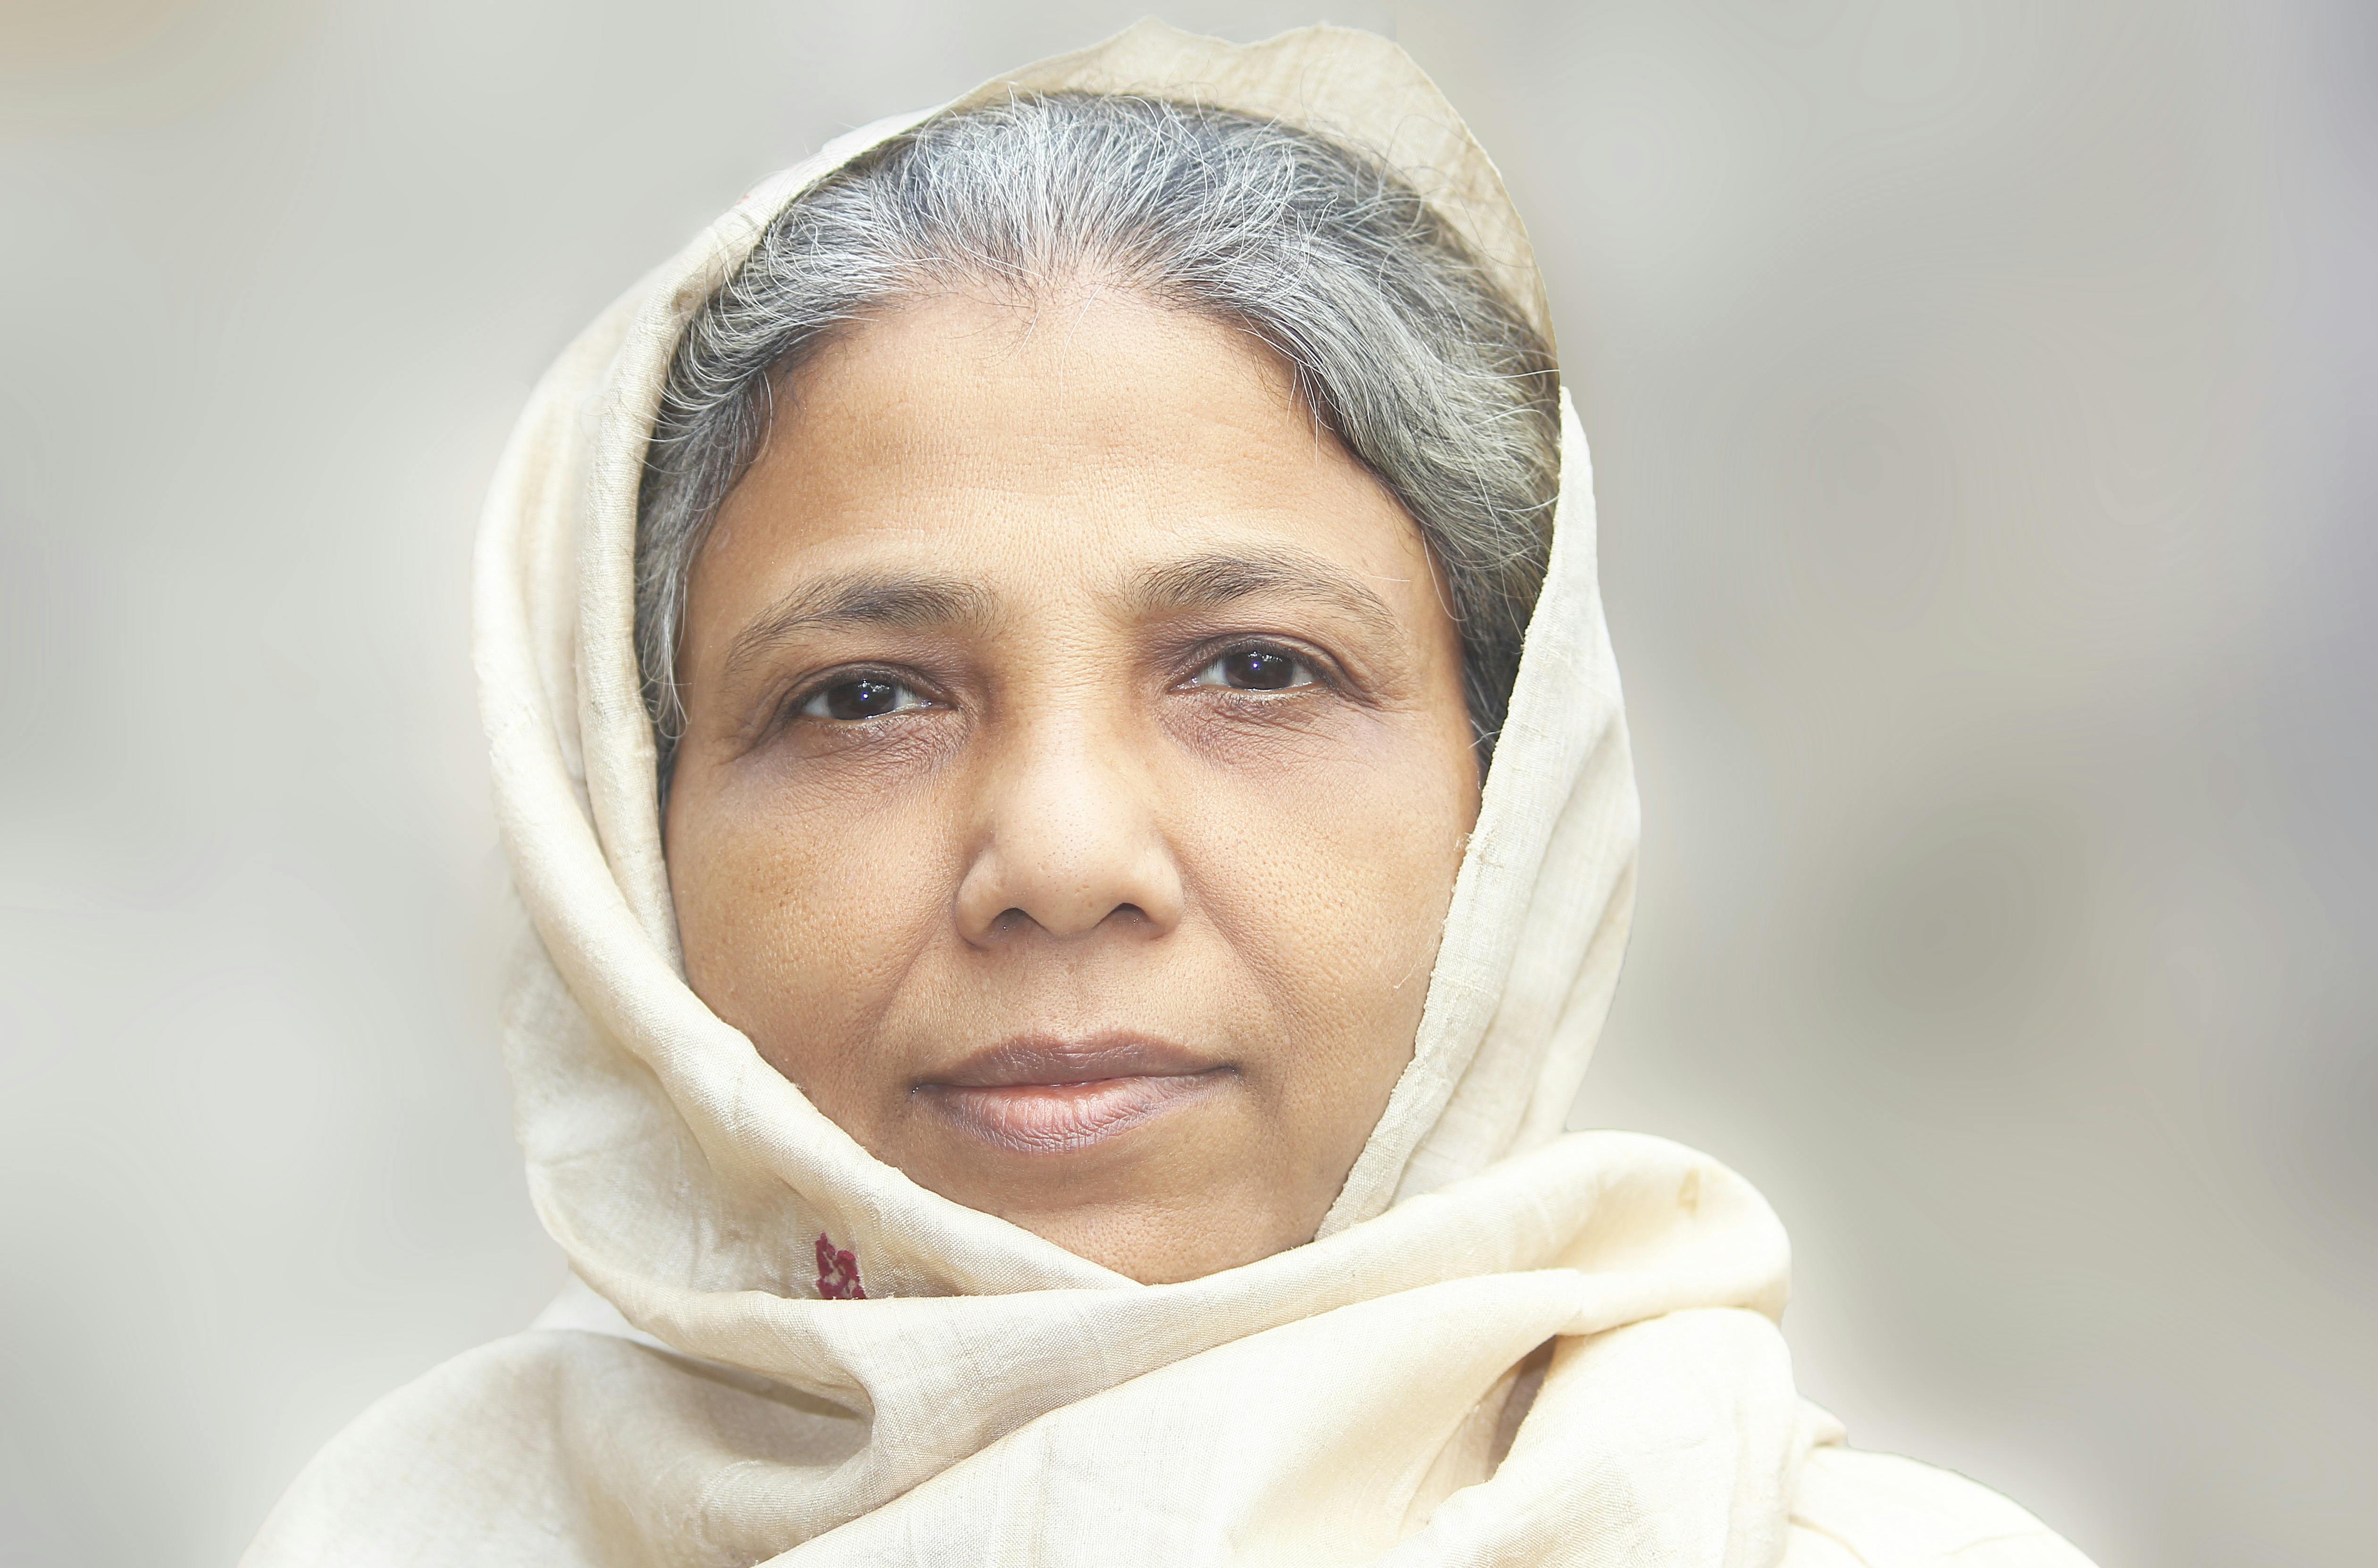 portrait of an elderly woman wearing white headscarf